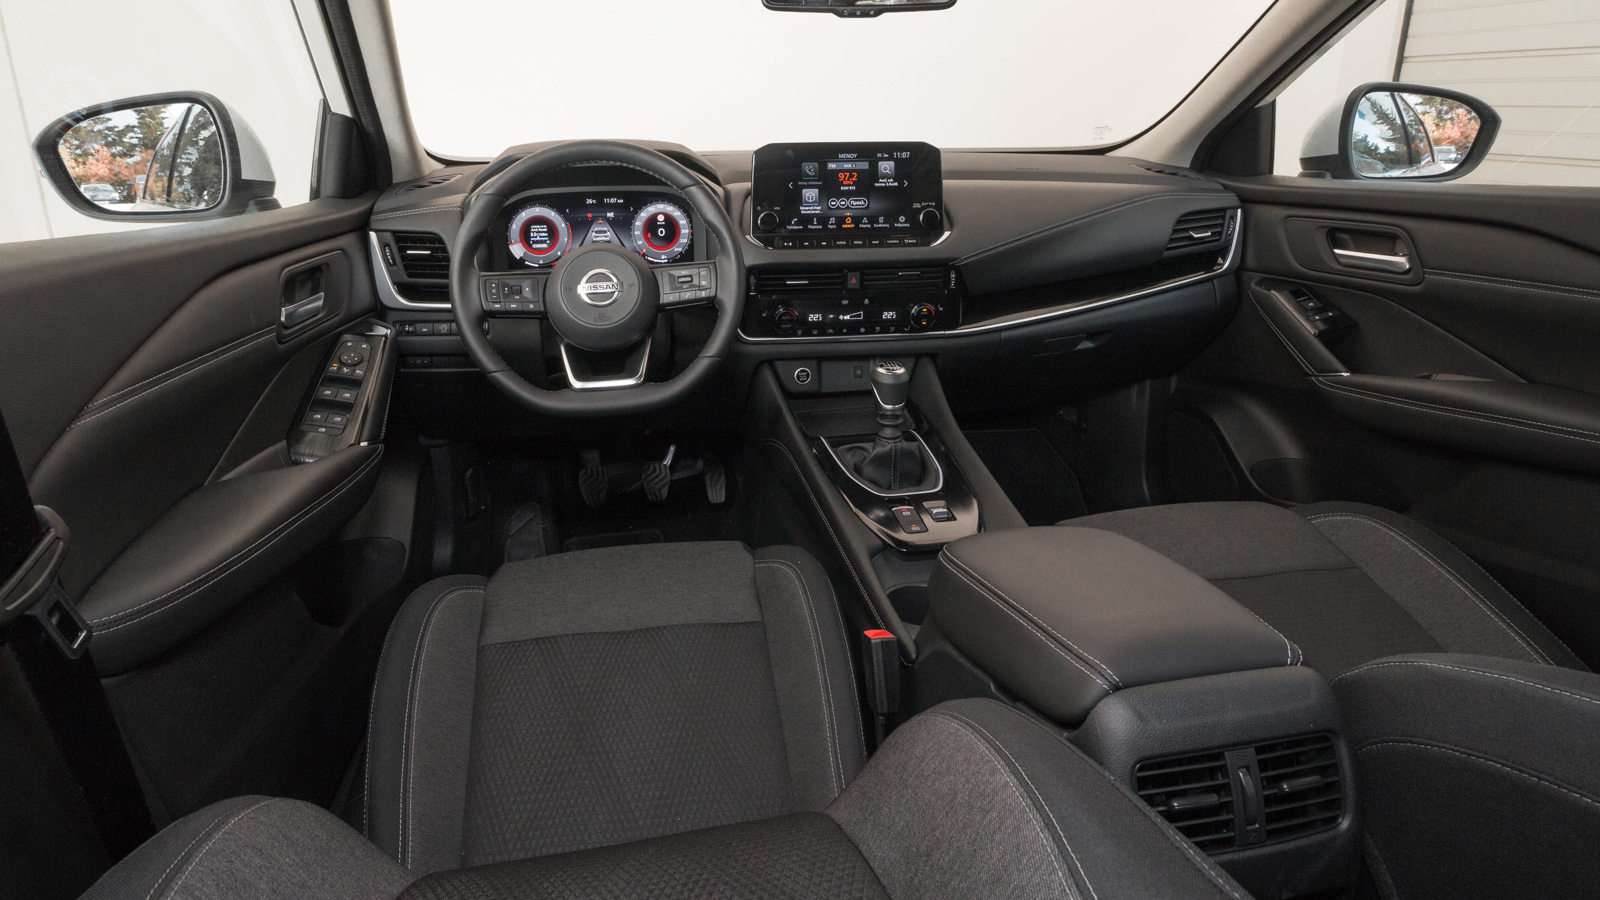 Από την βασική έκδοση, Elite, το αυτοκίνητο είναι φορτωμένο τόσο με ψηφιακά στοιχεία στη καμπίνα του, όσο και με συστήματα ασφαλείας και υποβοήθησης